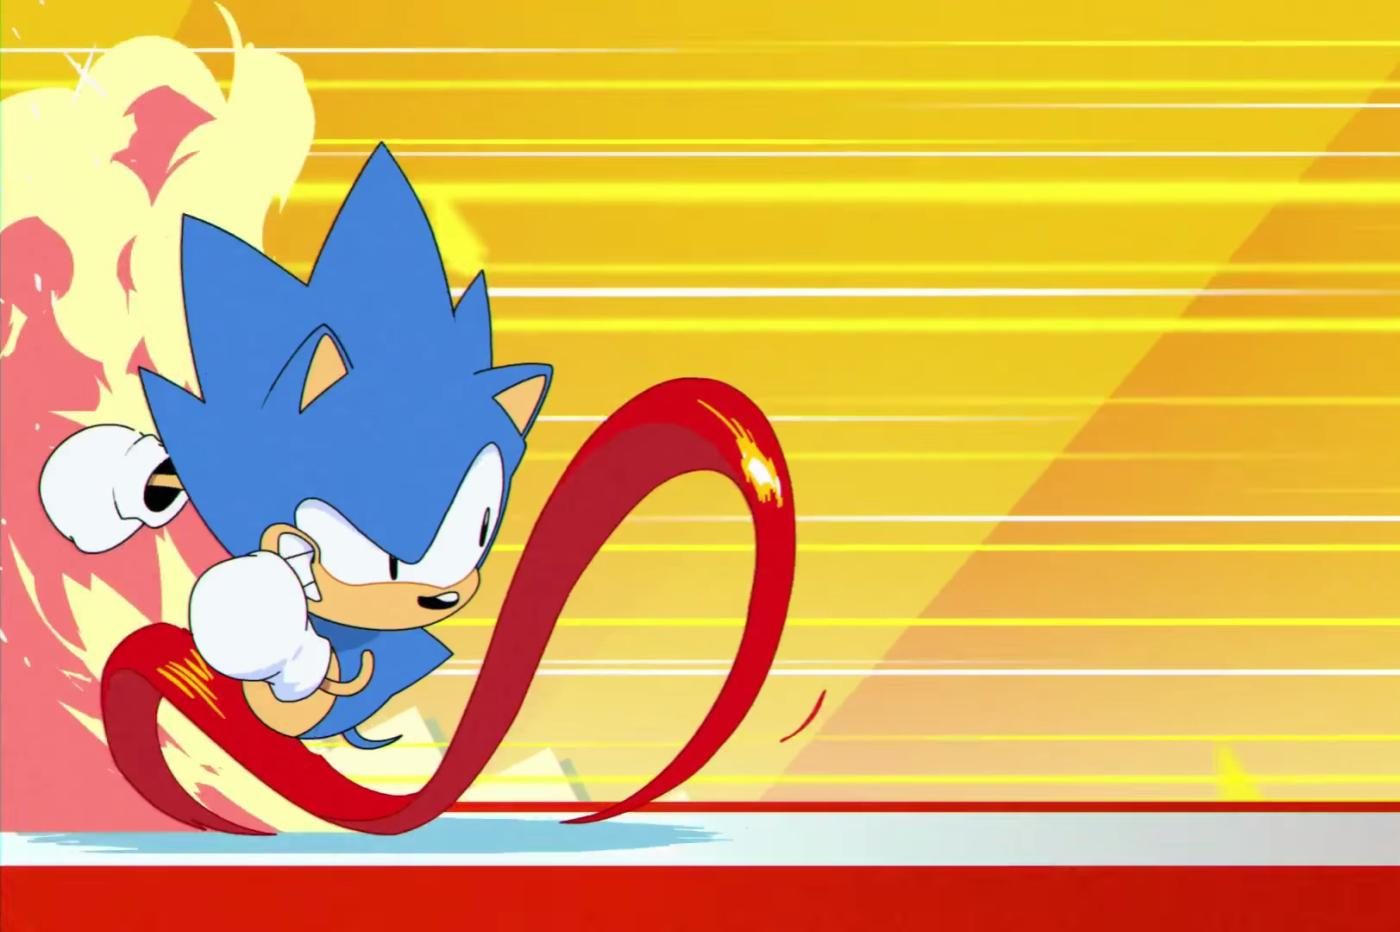 Extrait de la cinématique d'introduction de Sonic Mania montrait Sonic retro en train de courir sur place avant de partir à toute vitesse